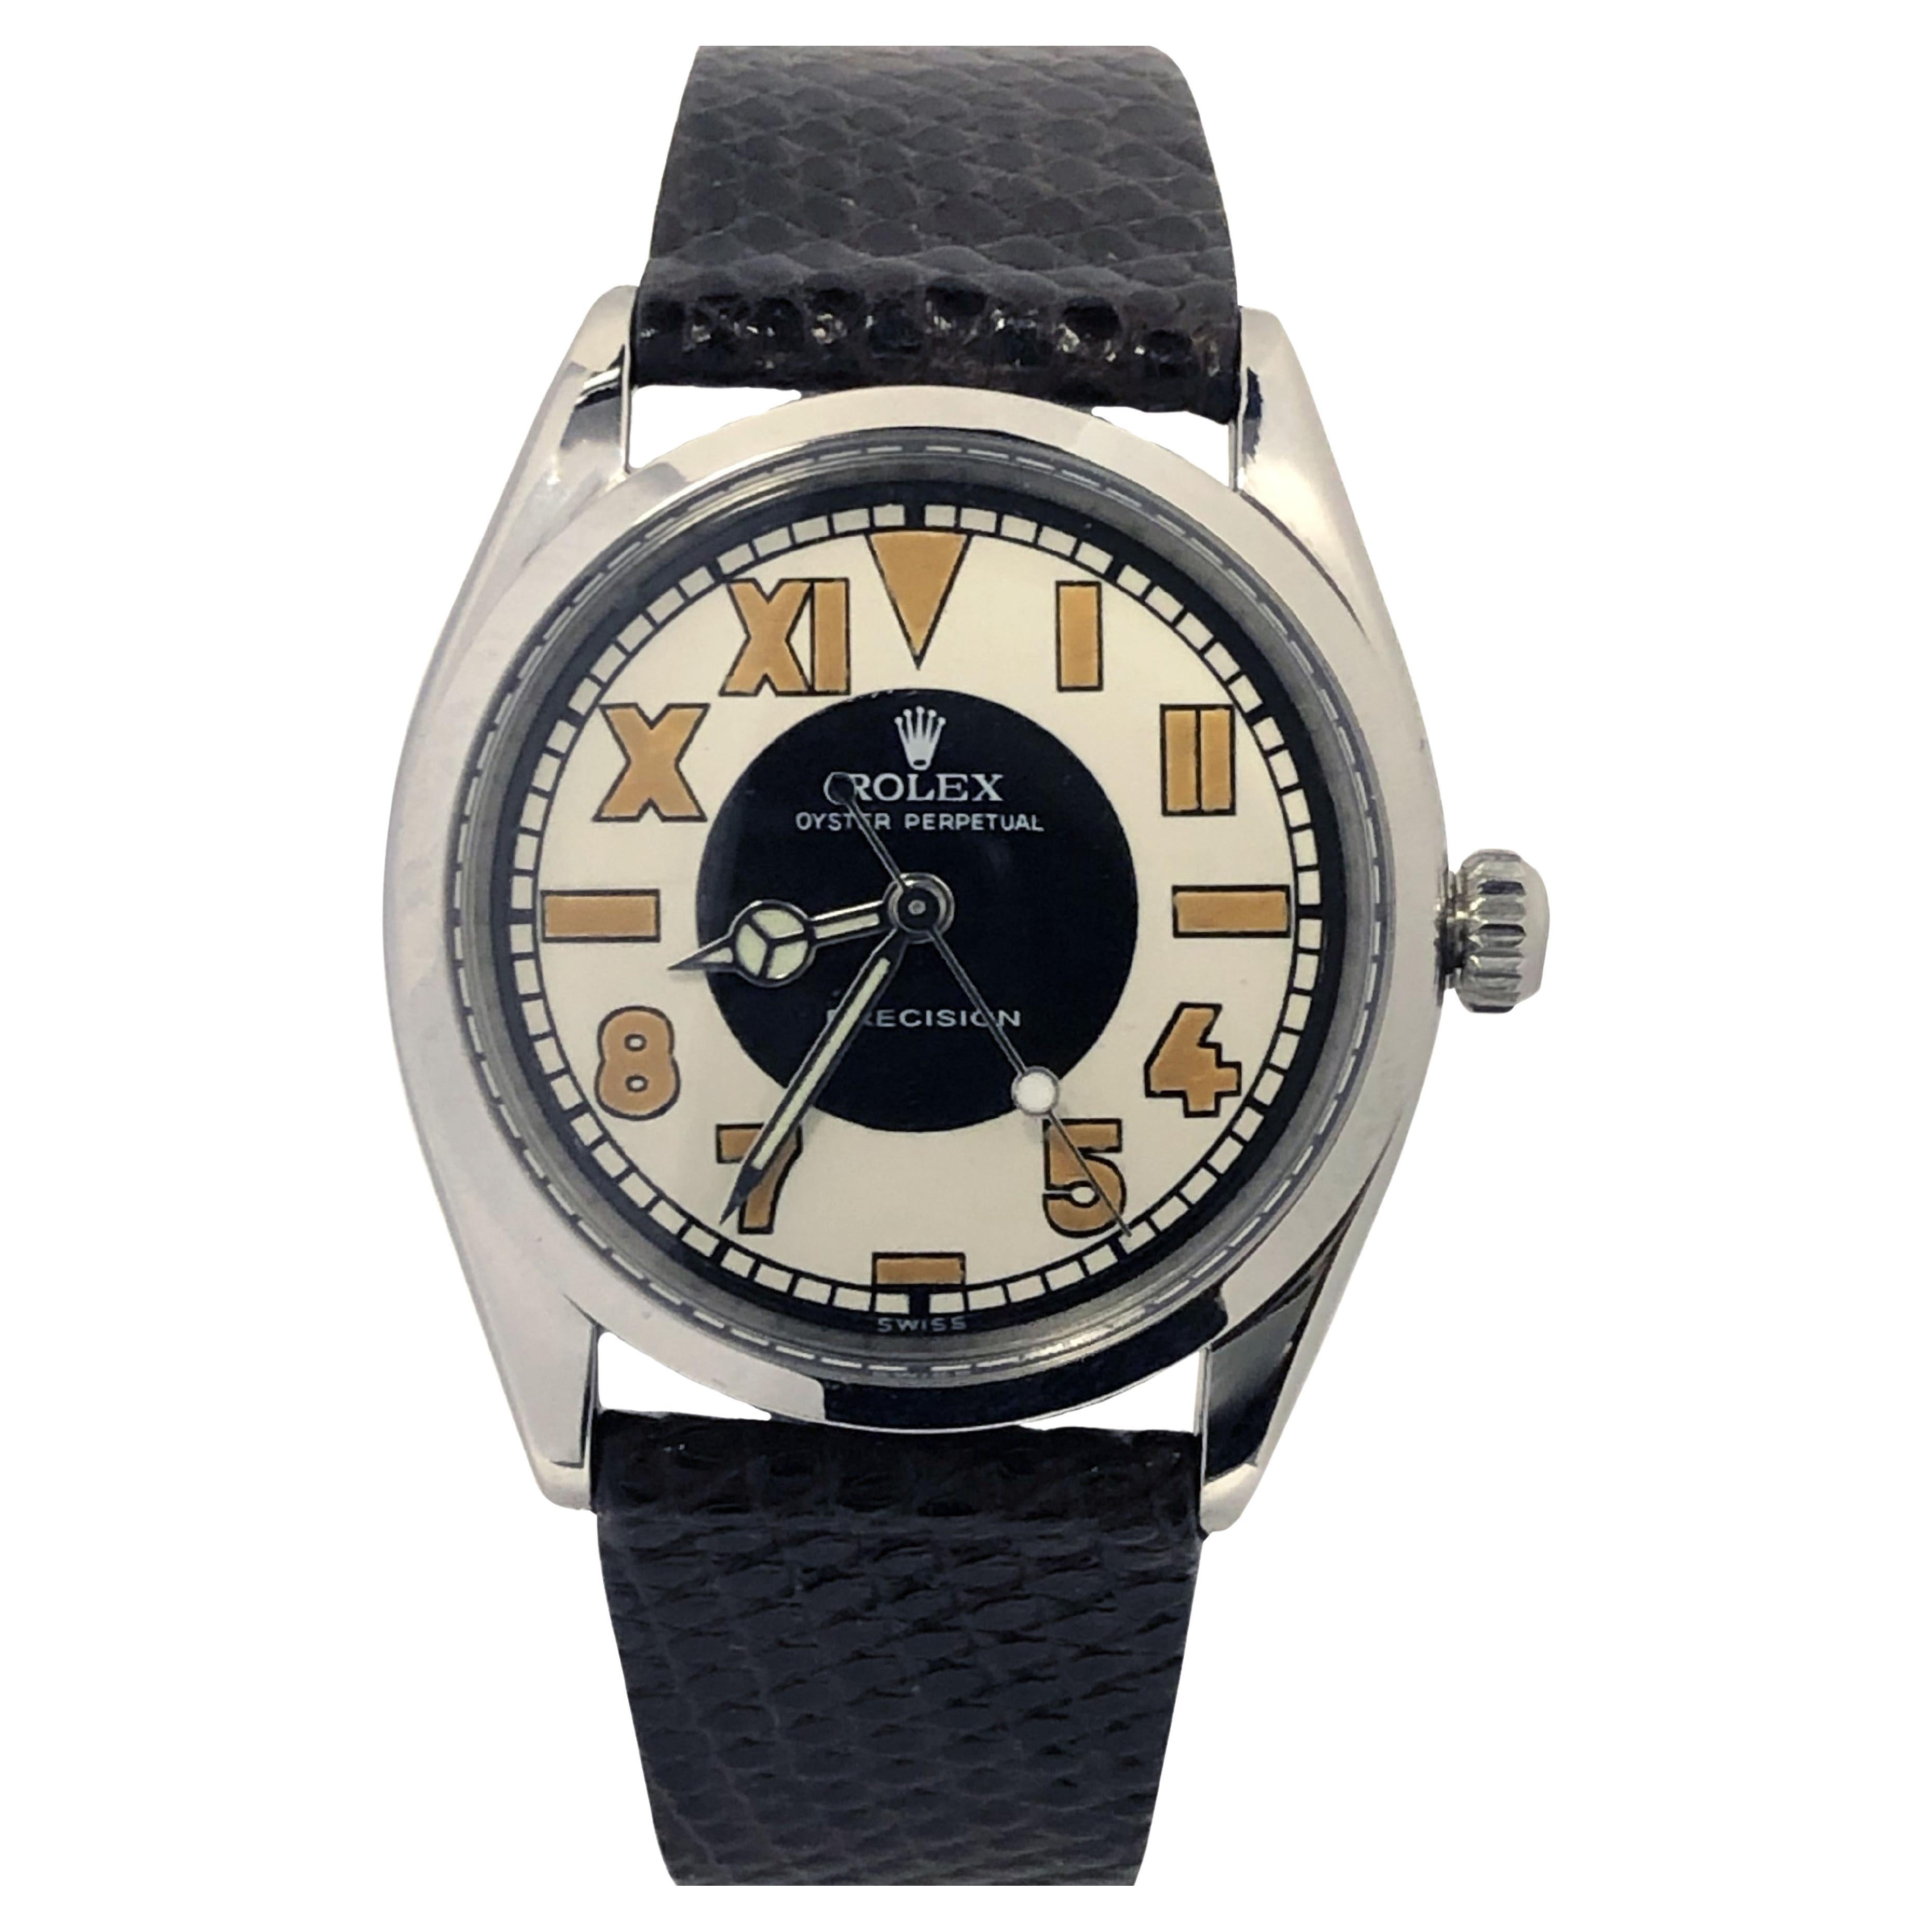 Rolex, montre-bracelet vintage à remontage automatique, réf. 6552, années 1940